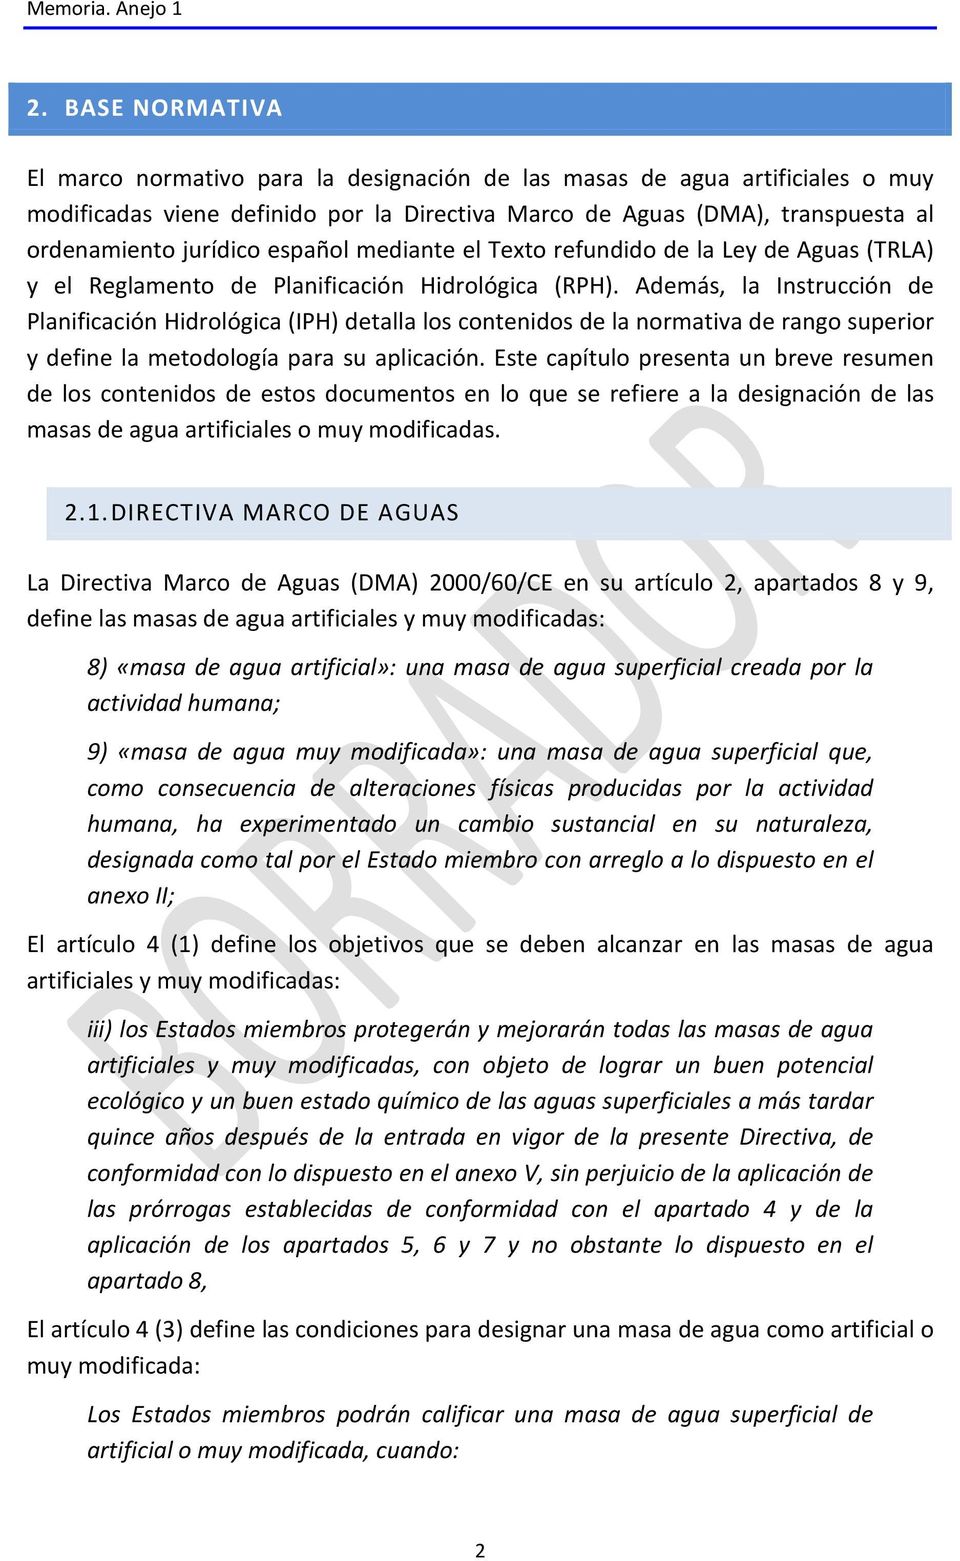 español mediante el Texto refundido de la Ley de Aguas (TRLA) y el Reglamento de Planificación Hidrológica (RPH).